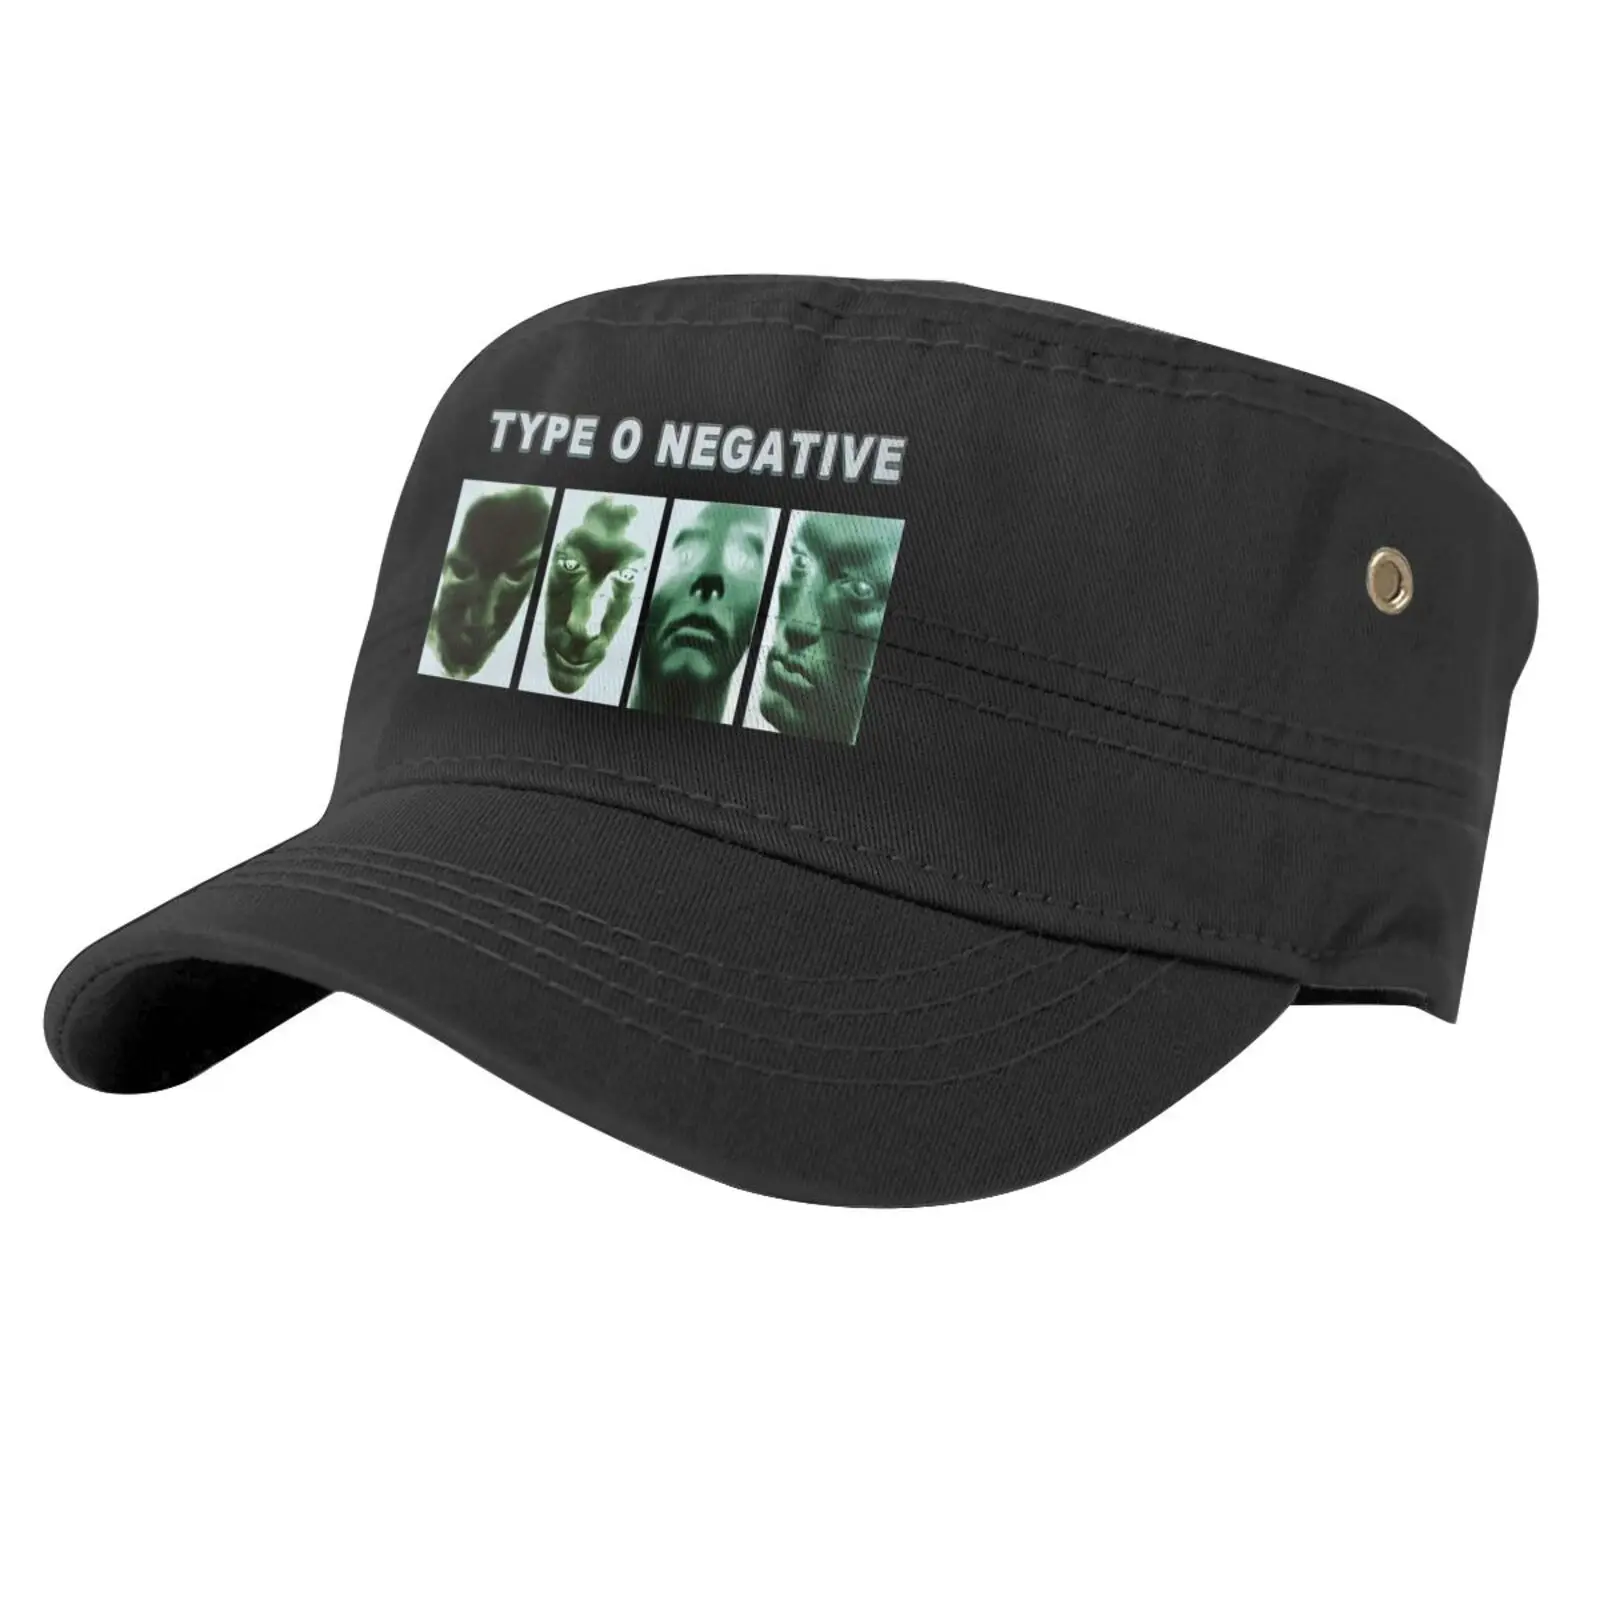 

Type O Negative Band Color Negative 2206 Caps For Men Cap Male Hats For Men Hats Brazil Man Hat Cap Adventure Time Cowboy Hats